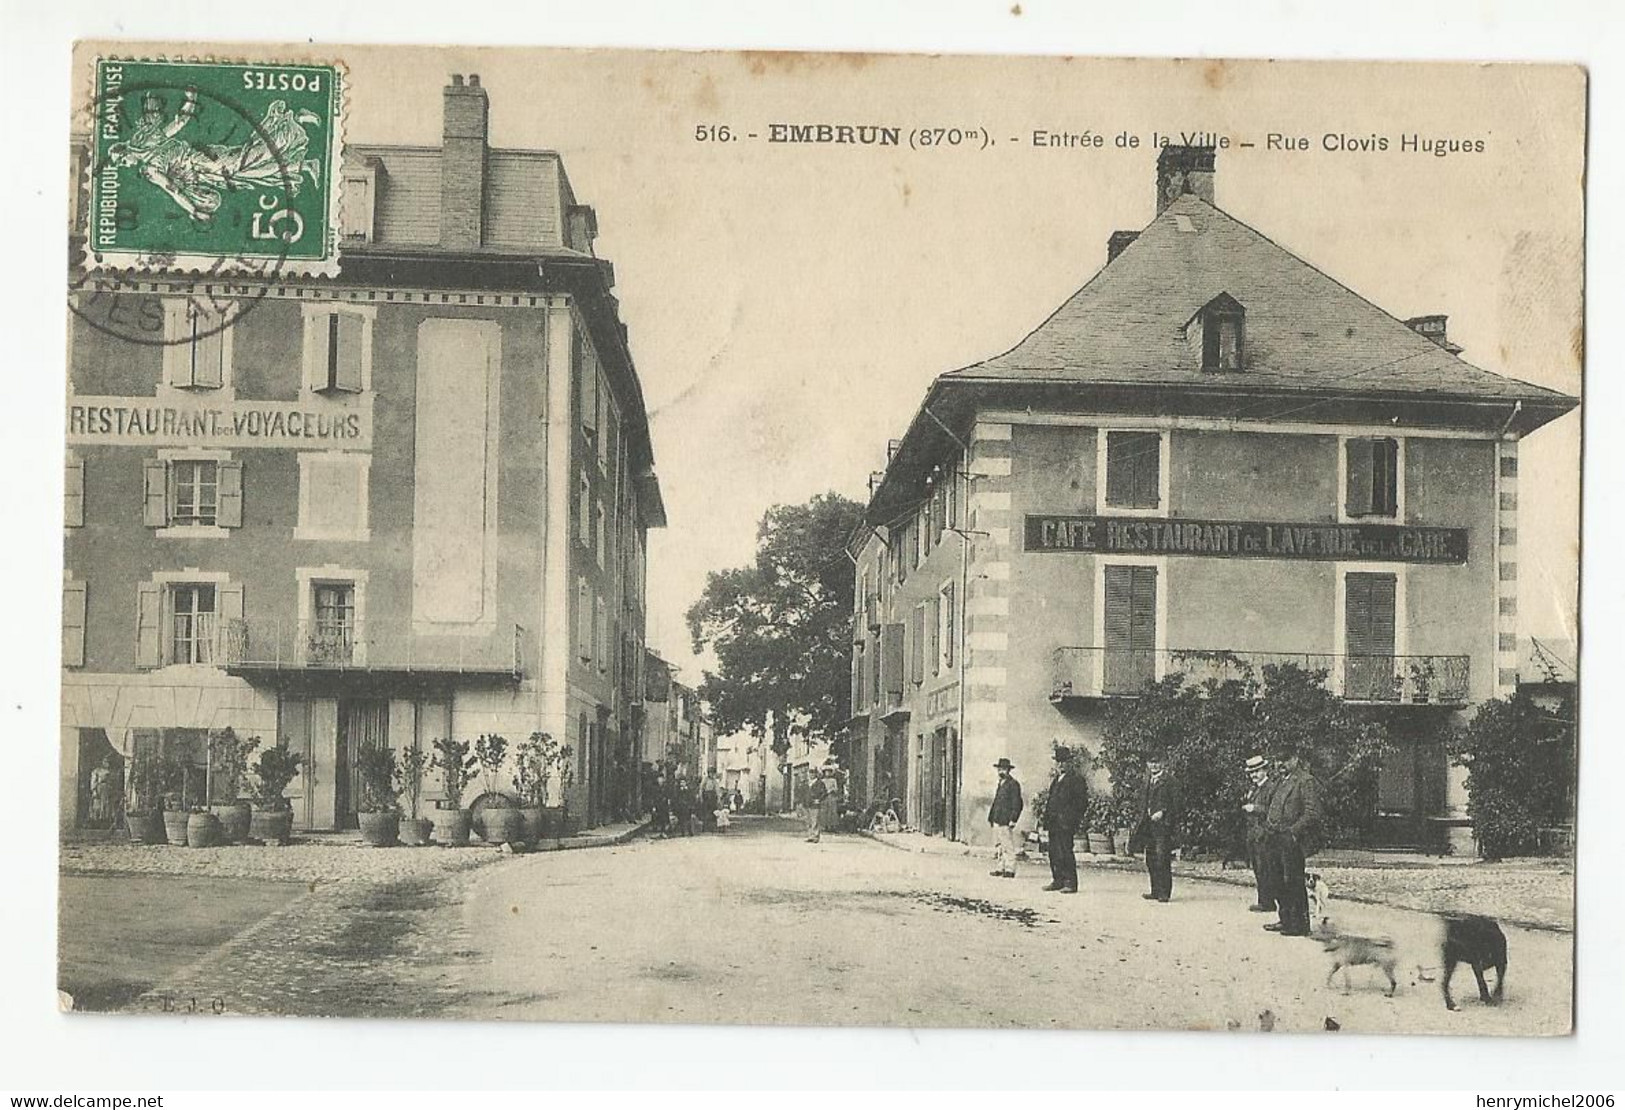 05 Hautes Alpes Embrun Entrée De La Ville Rue Clovis Hugues Restaurant Des Voyageurs Café De L'avenue De La Gare 1909 - Embrun